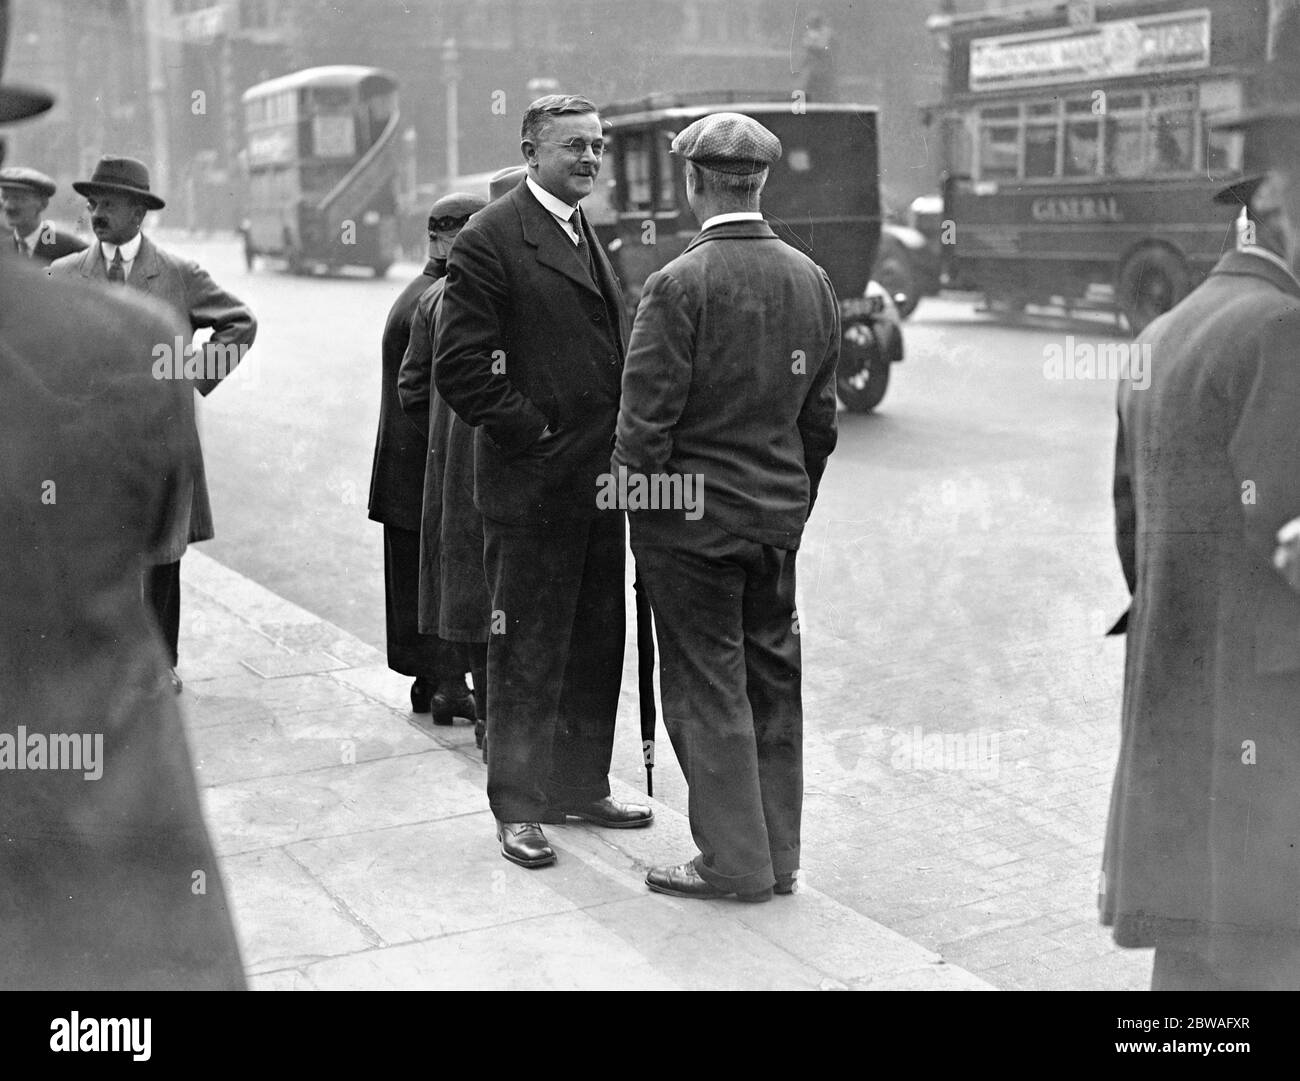 Parlement re - assemblages . Le député socialiste écossais, David Kirkwood, parle dans la rue. 8 septembre 1931 Banque D'Images